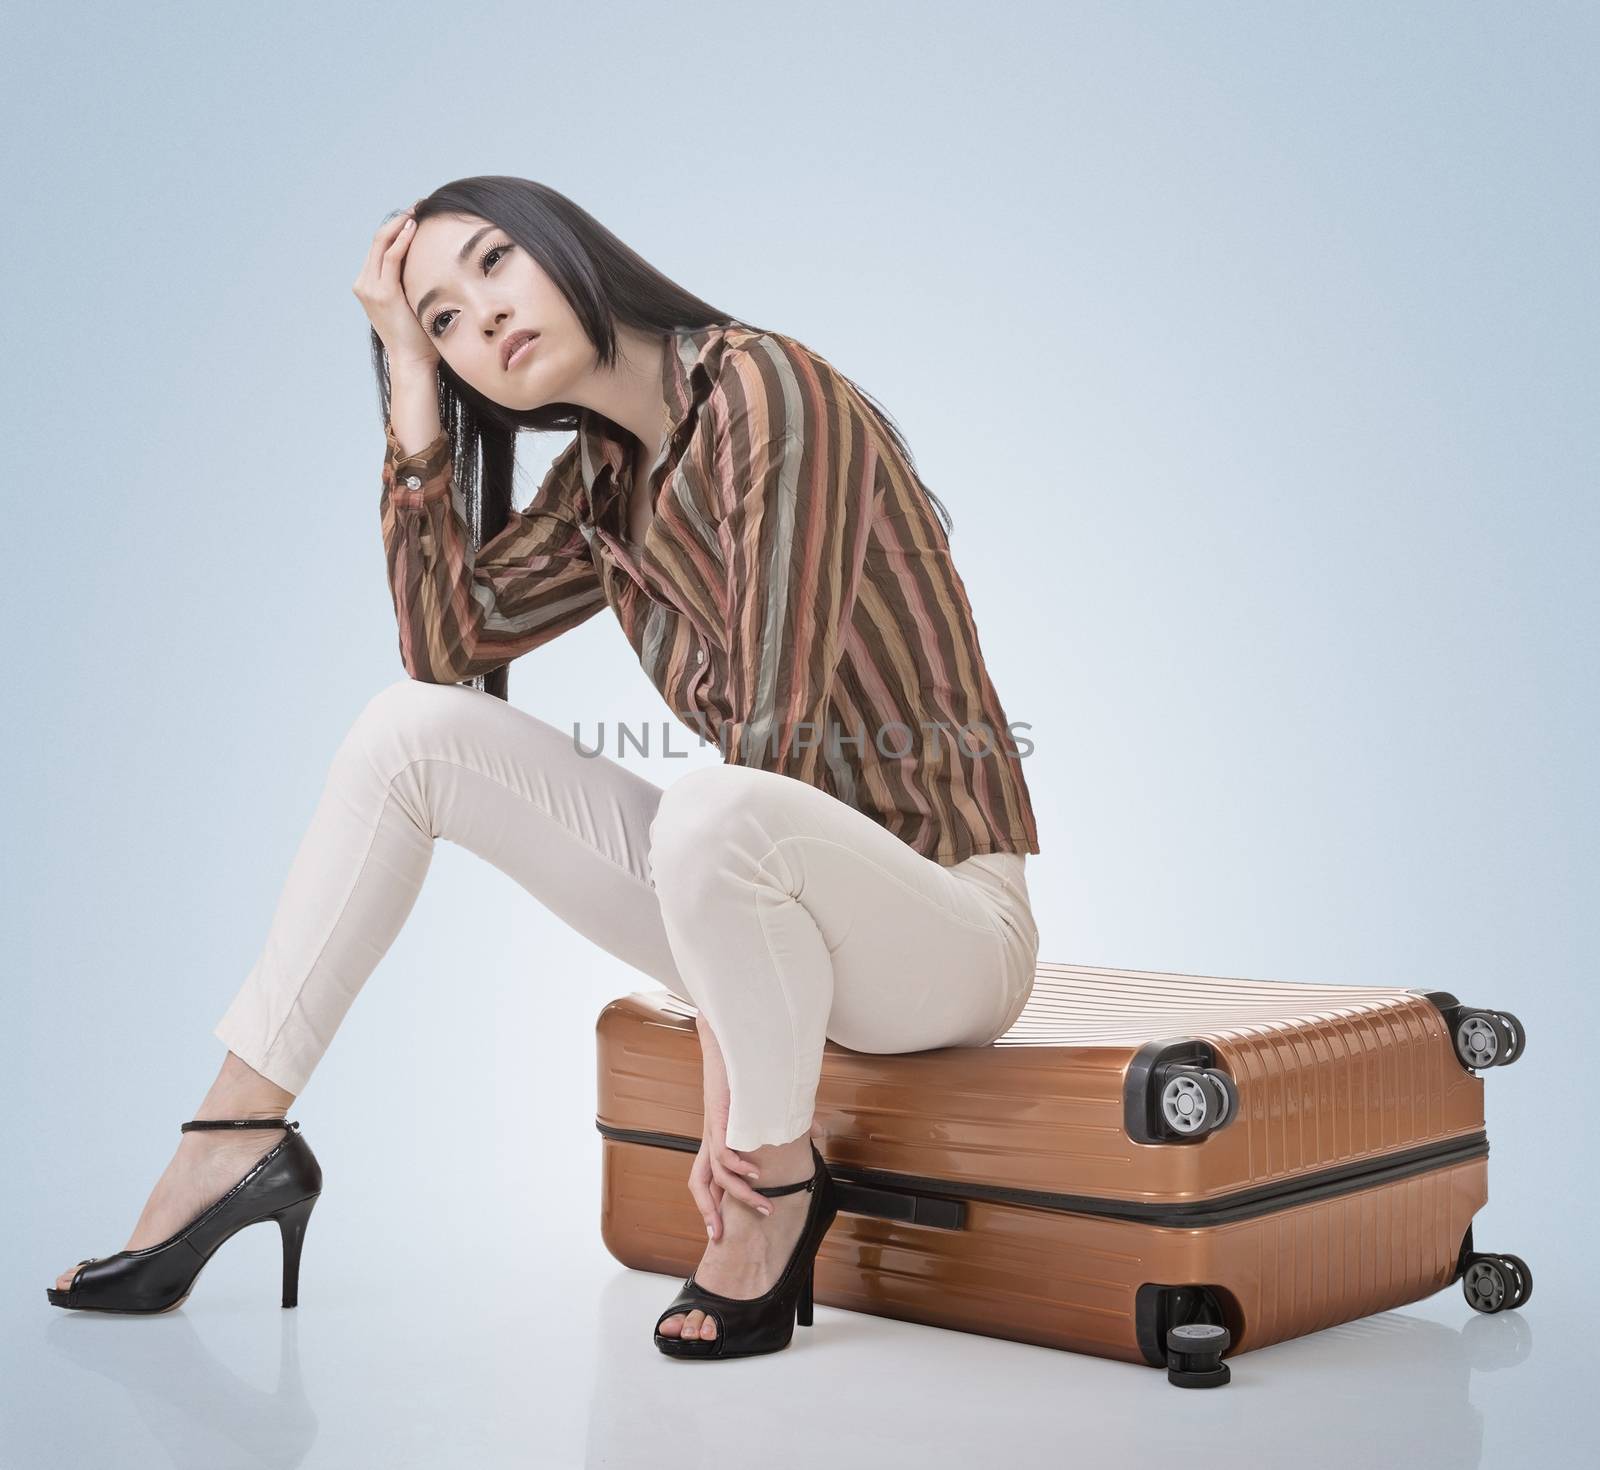 Asian woman thinking and sitting on a luggage by elwynn